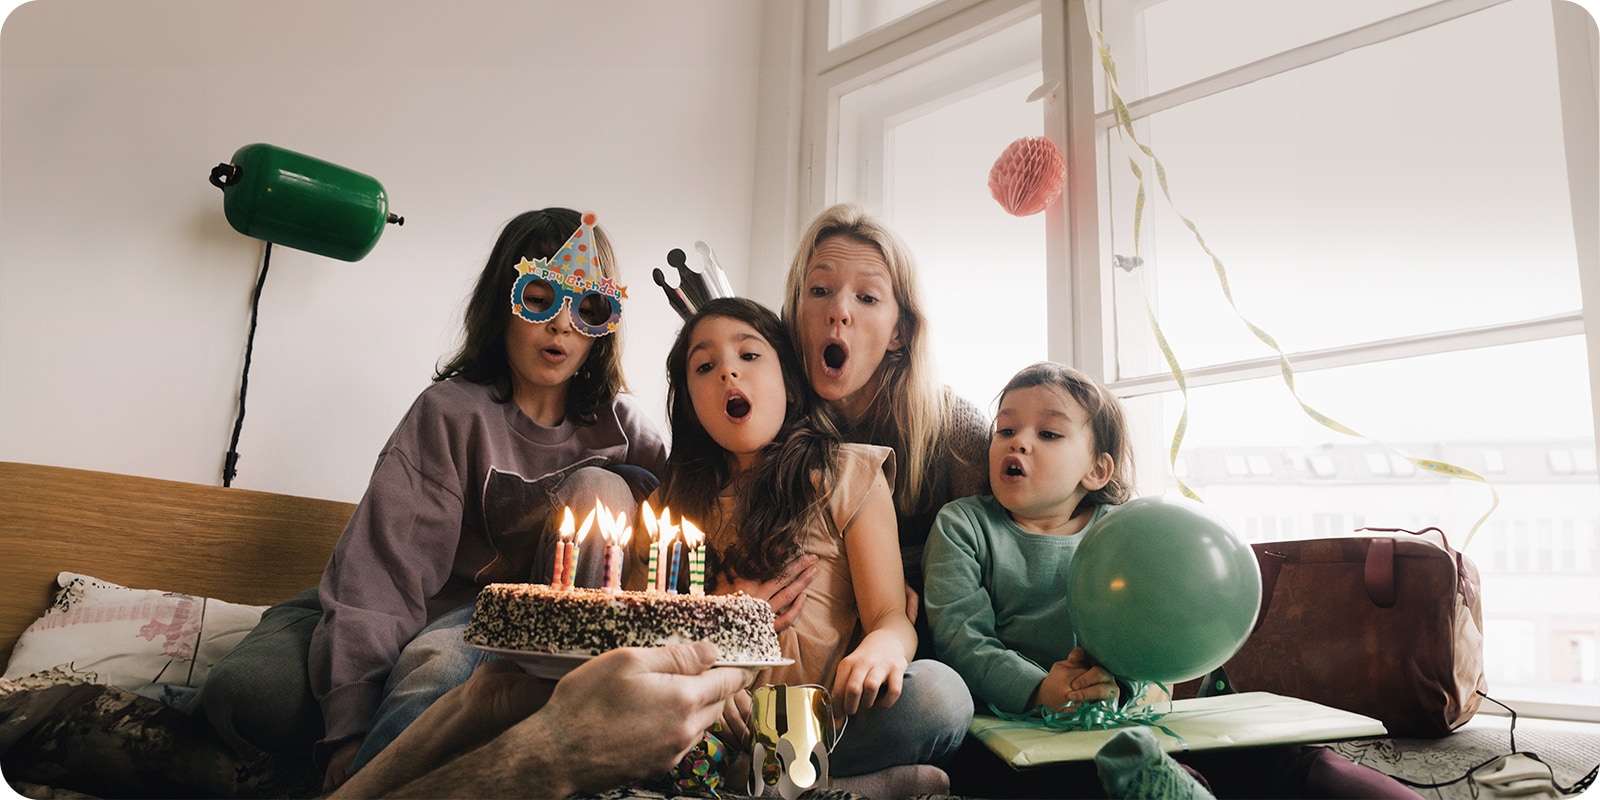 Bilde av to voksne kvinner og en ung jente med bursdagshatt på hodet som blåser ut lysene på kaken.